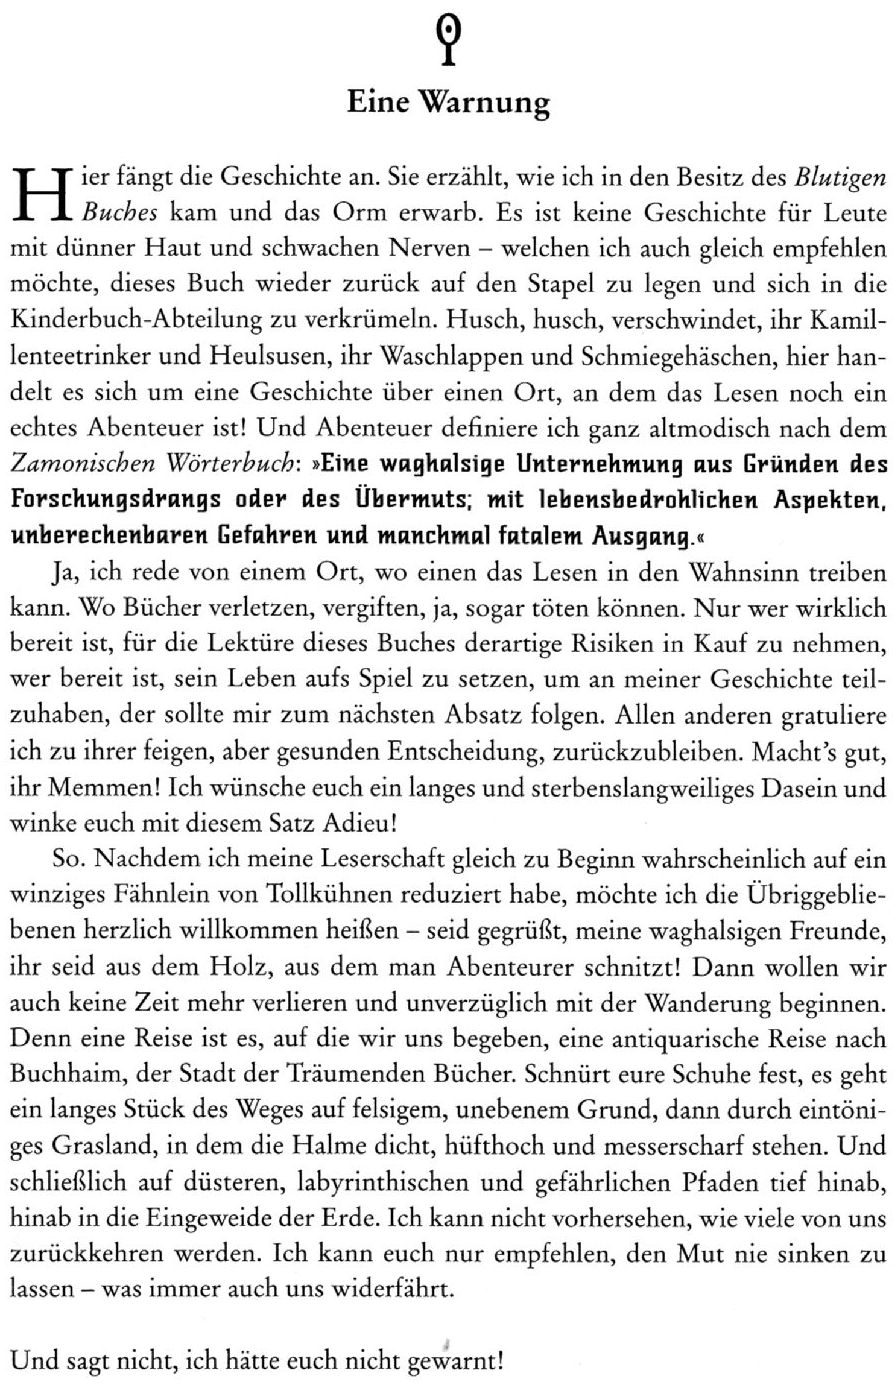 Walter Moers, Stadt der trumenden Bcher - 1. Seite